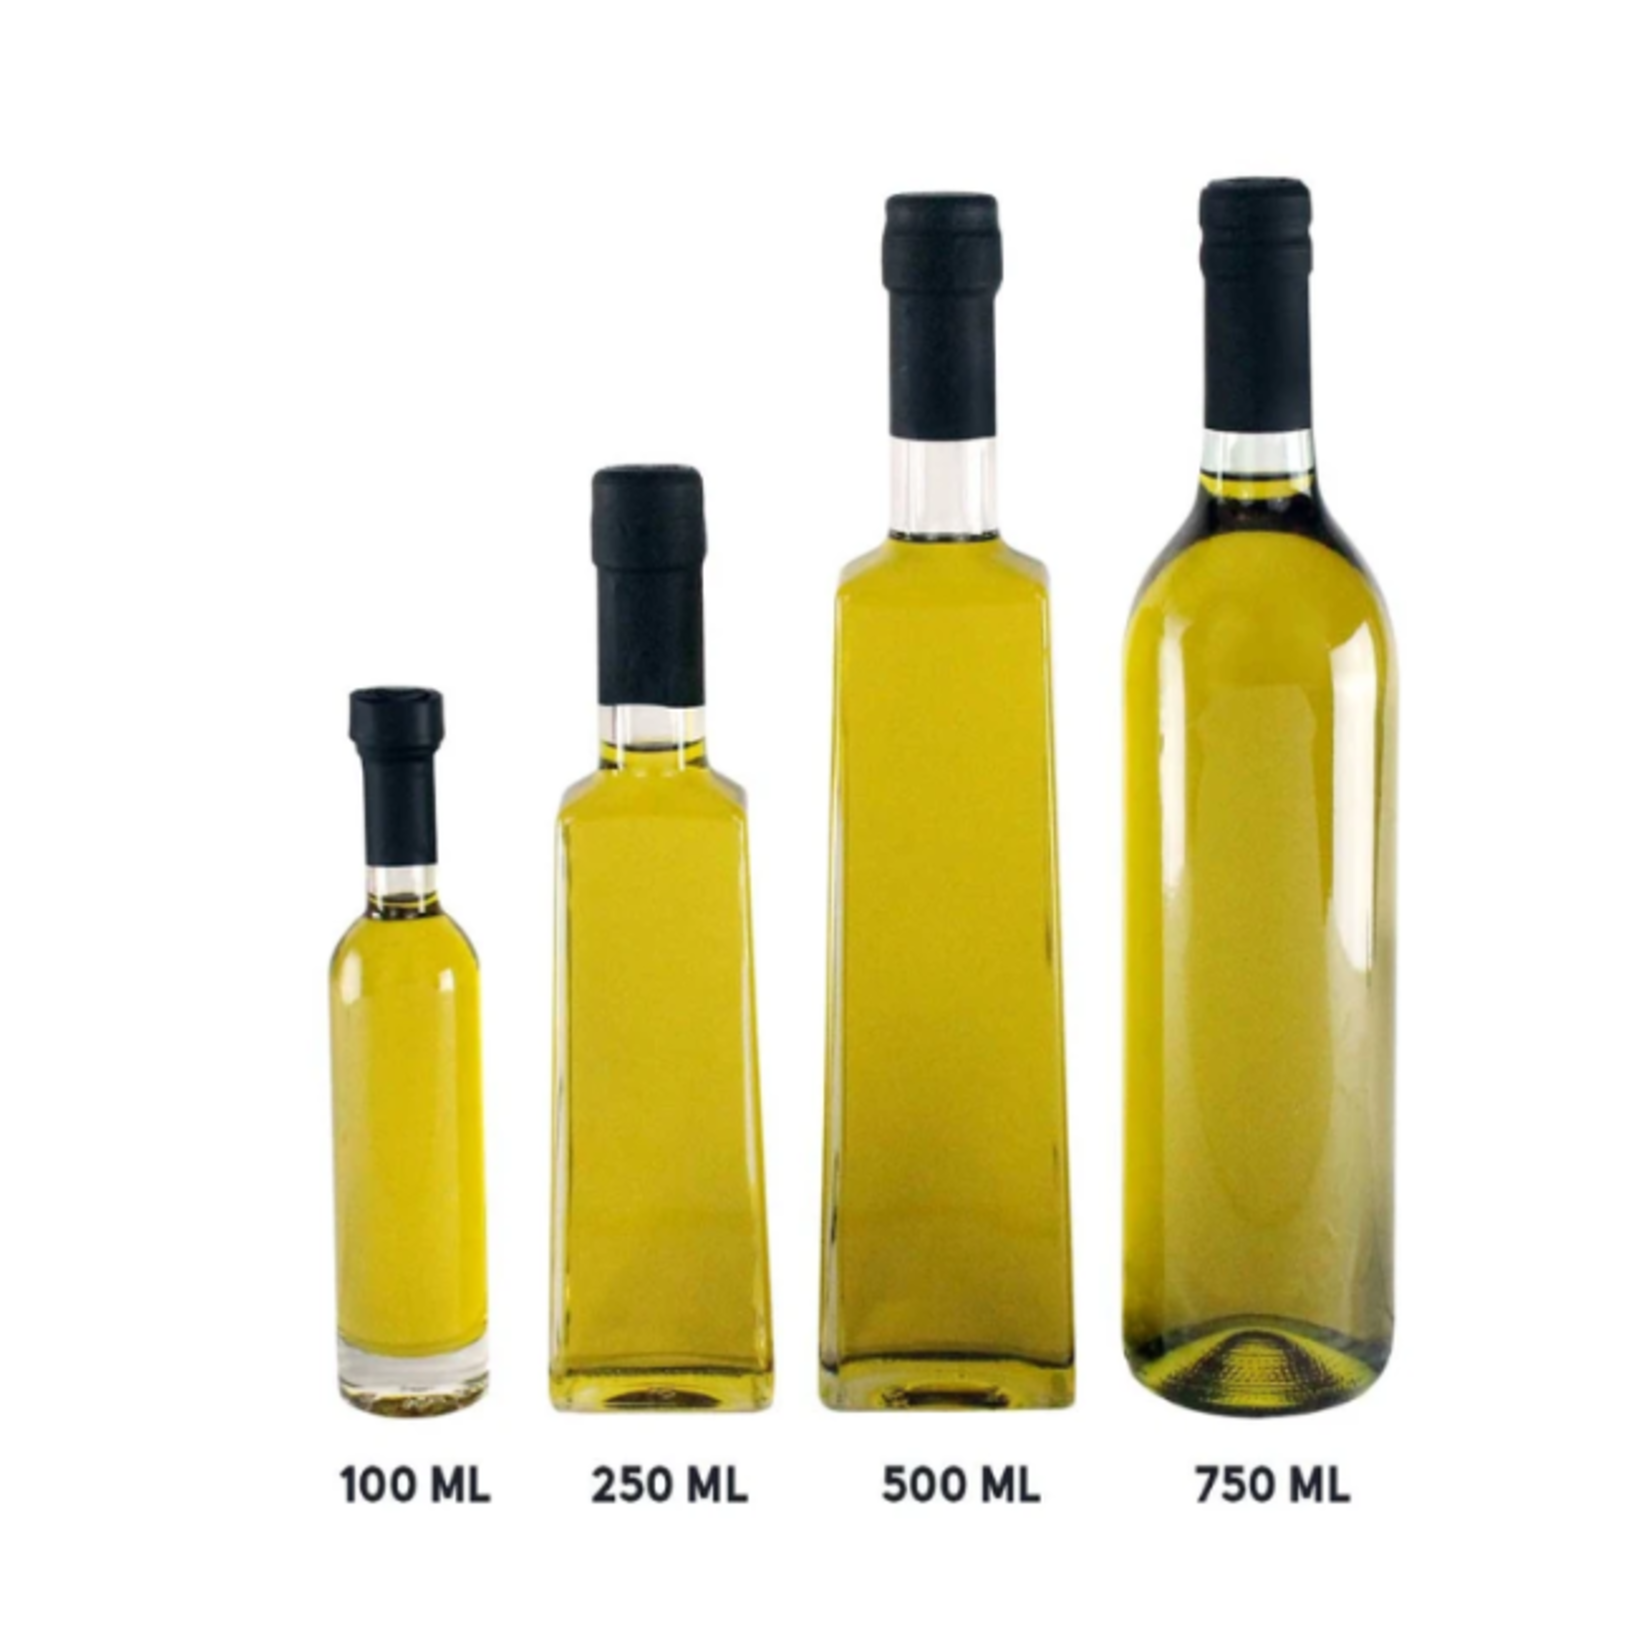 Olivelle Tuscan Herb Olive Oil